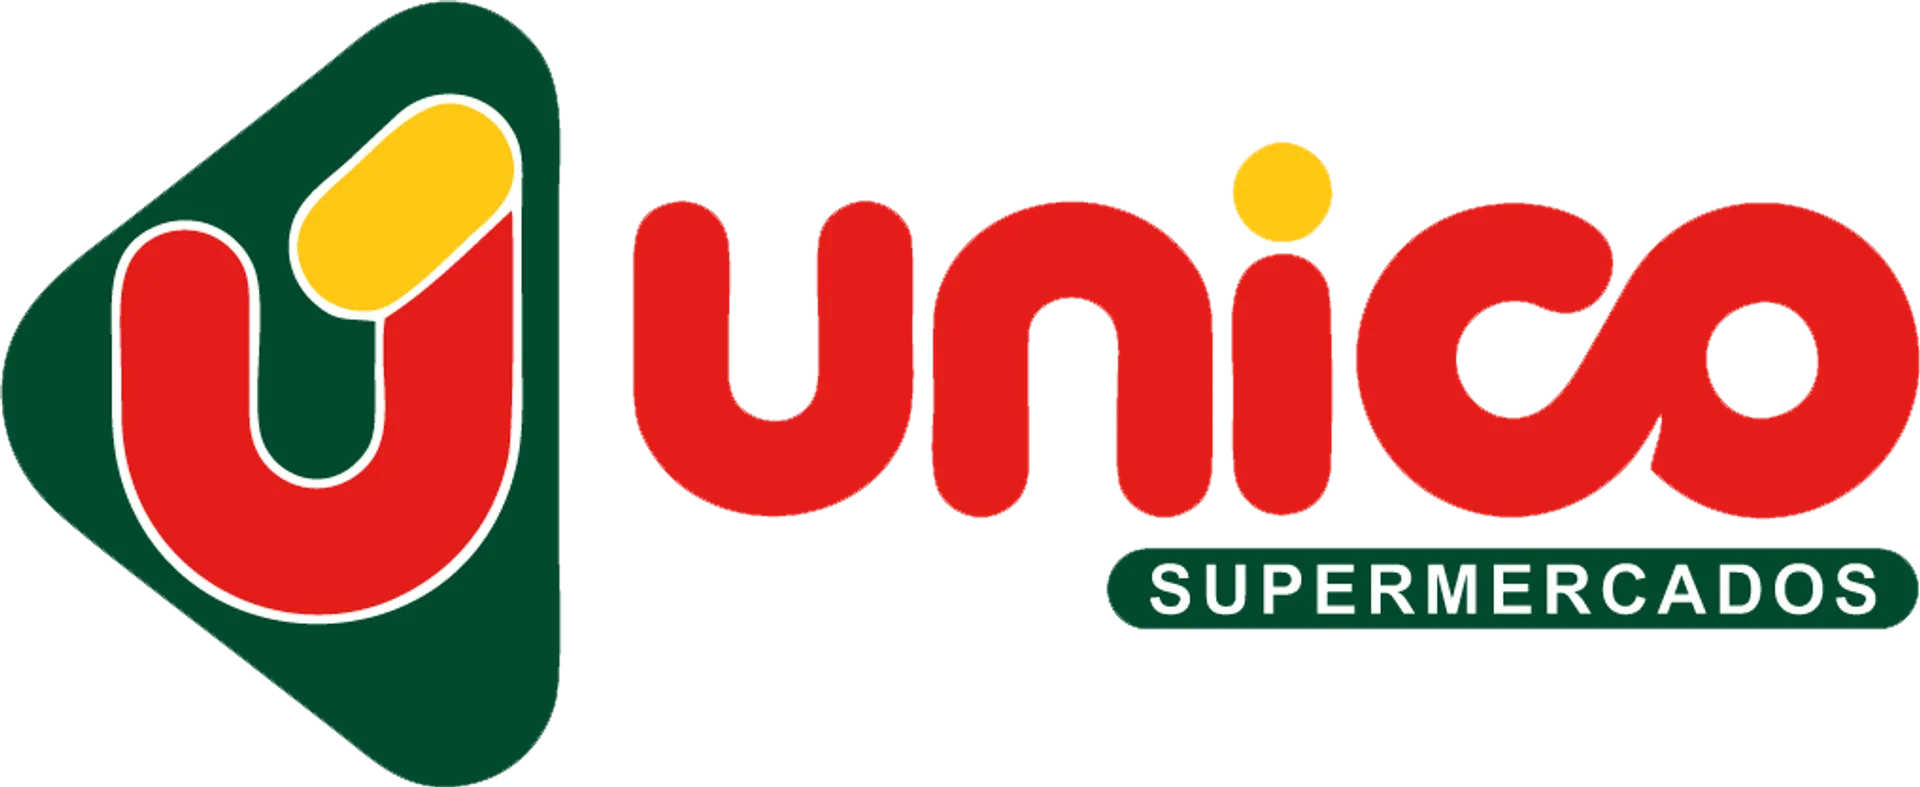 ÚNICO SUPERMERCADOS logo